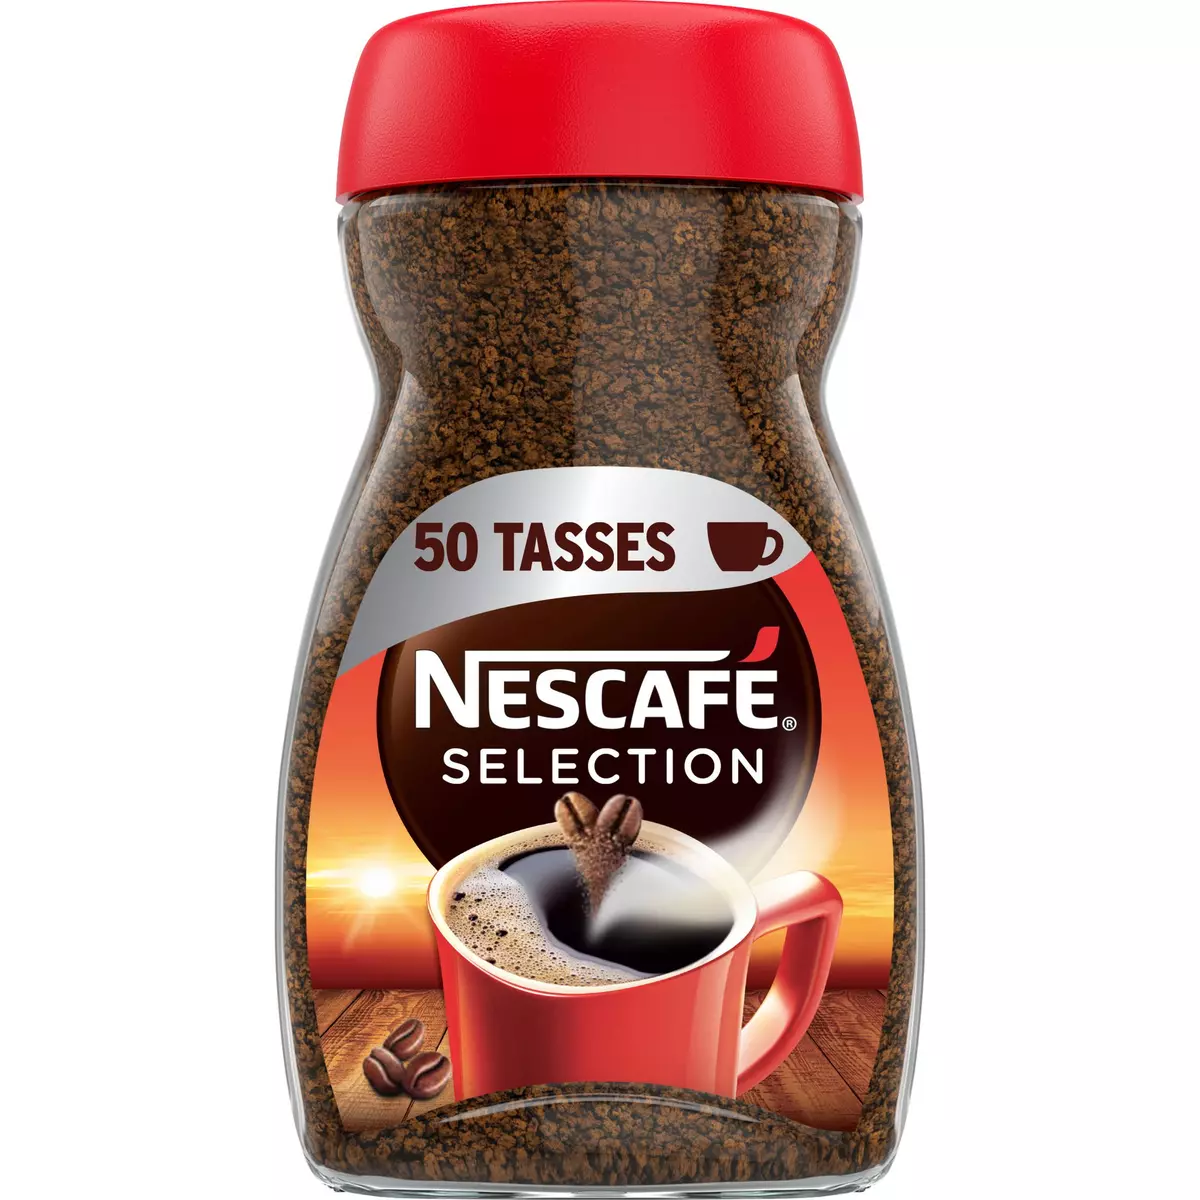 NESCAFE Café soluble corsé et intense 50 tasses 100g